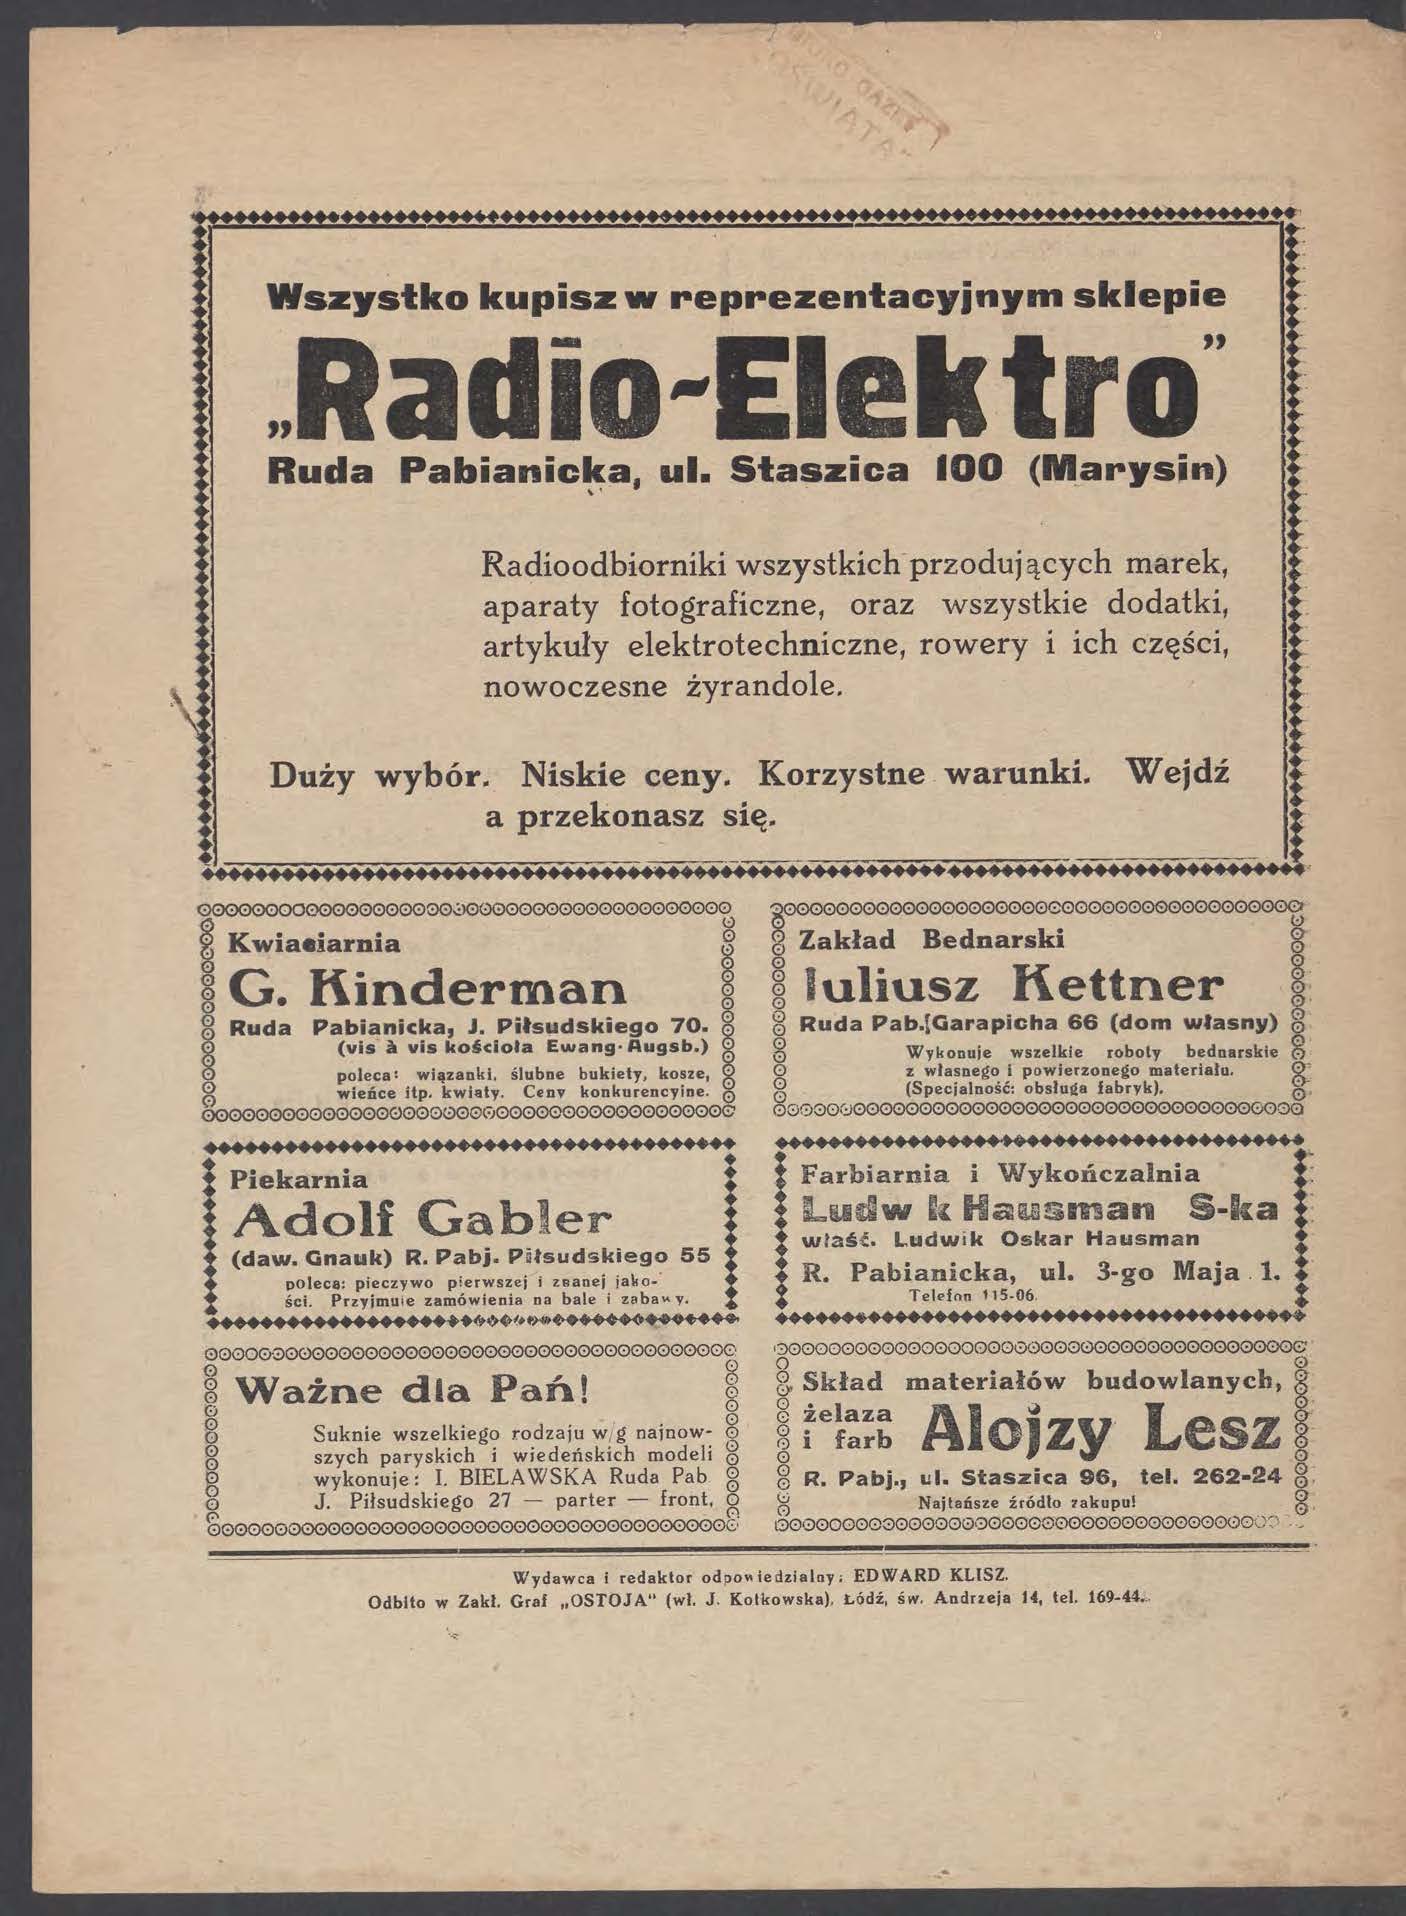 Wszystko kupisz w reprezentacyjnym sklepie Radio-Elek tro" Ruda Pabianicka, ul. Staszica 100 (~arysin) '.